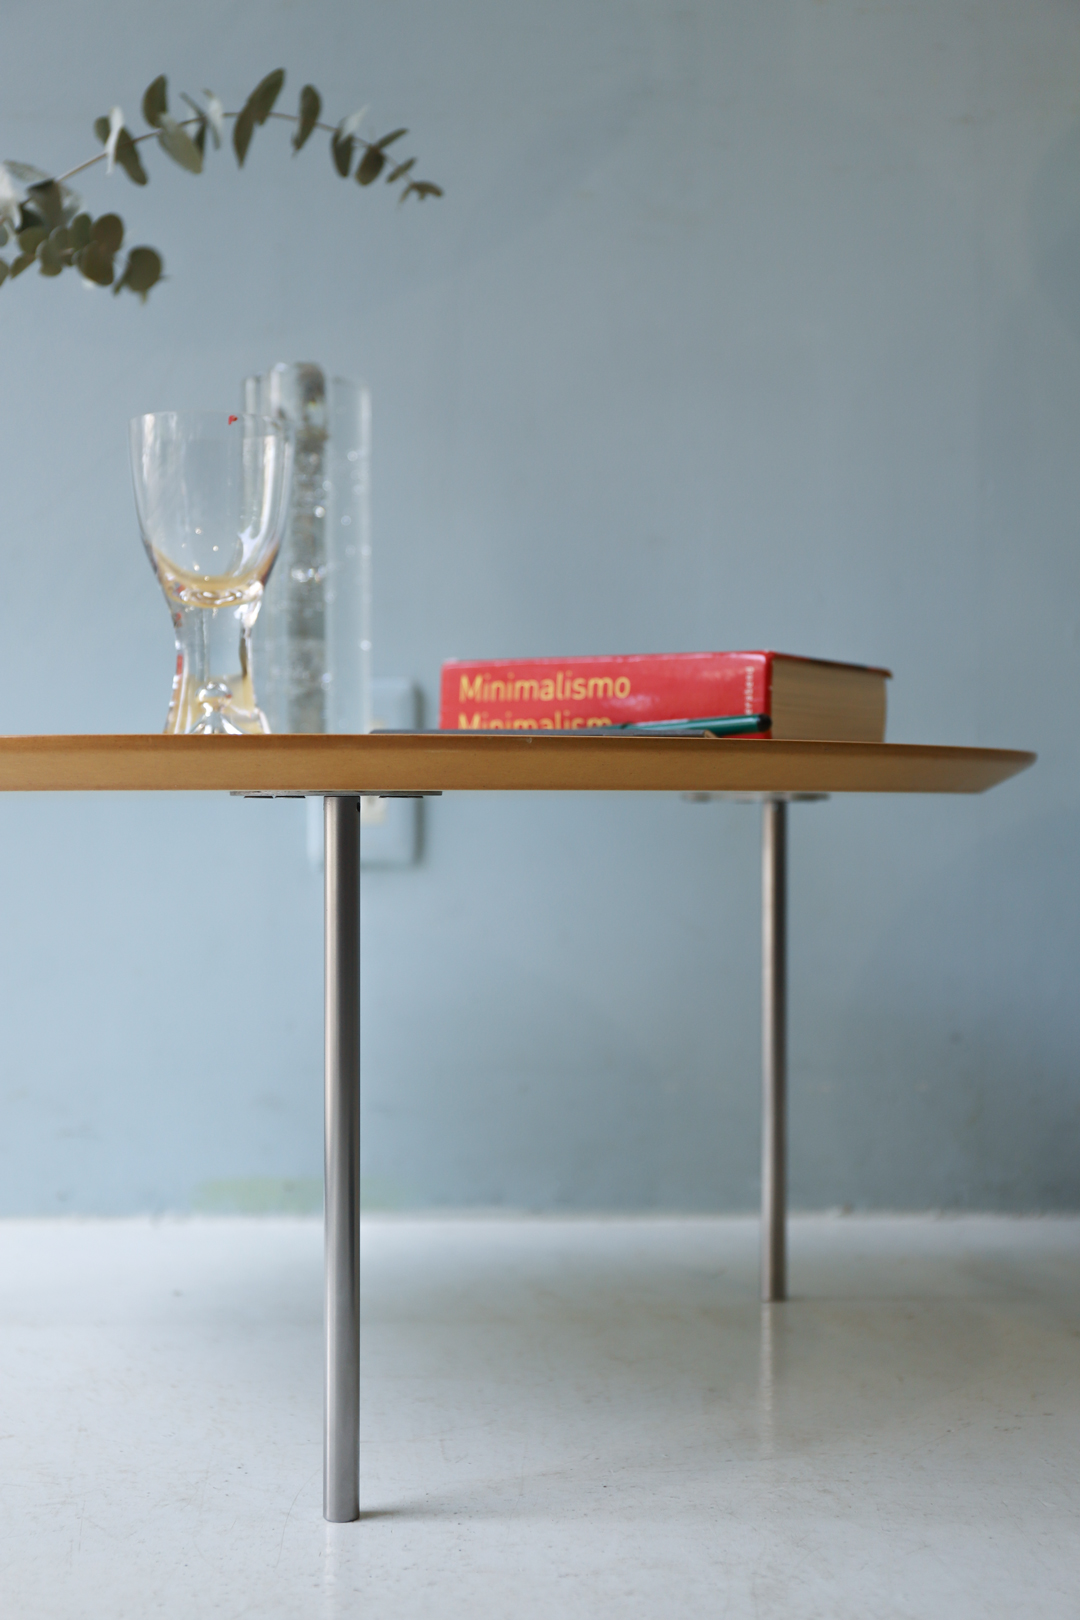 STUA ECLIPSE Side Table Made in Spain/ストゥア エクリプス サイドテーブル スペイン製 シンプル モダンデザイン